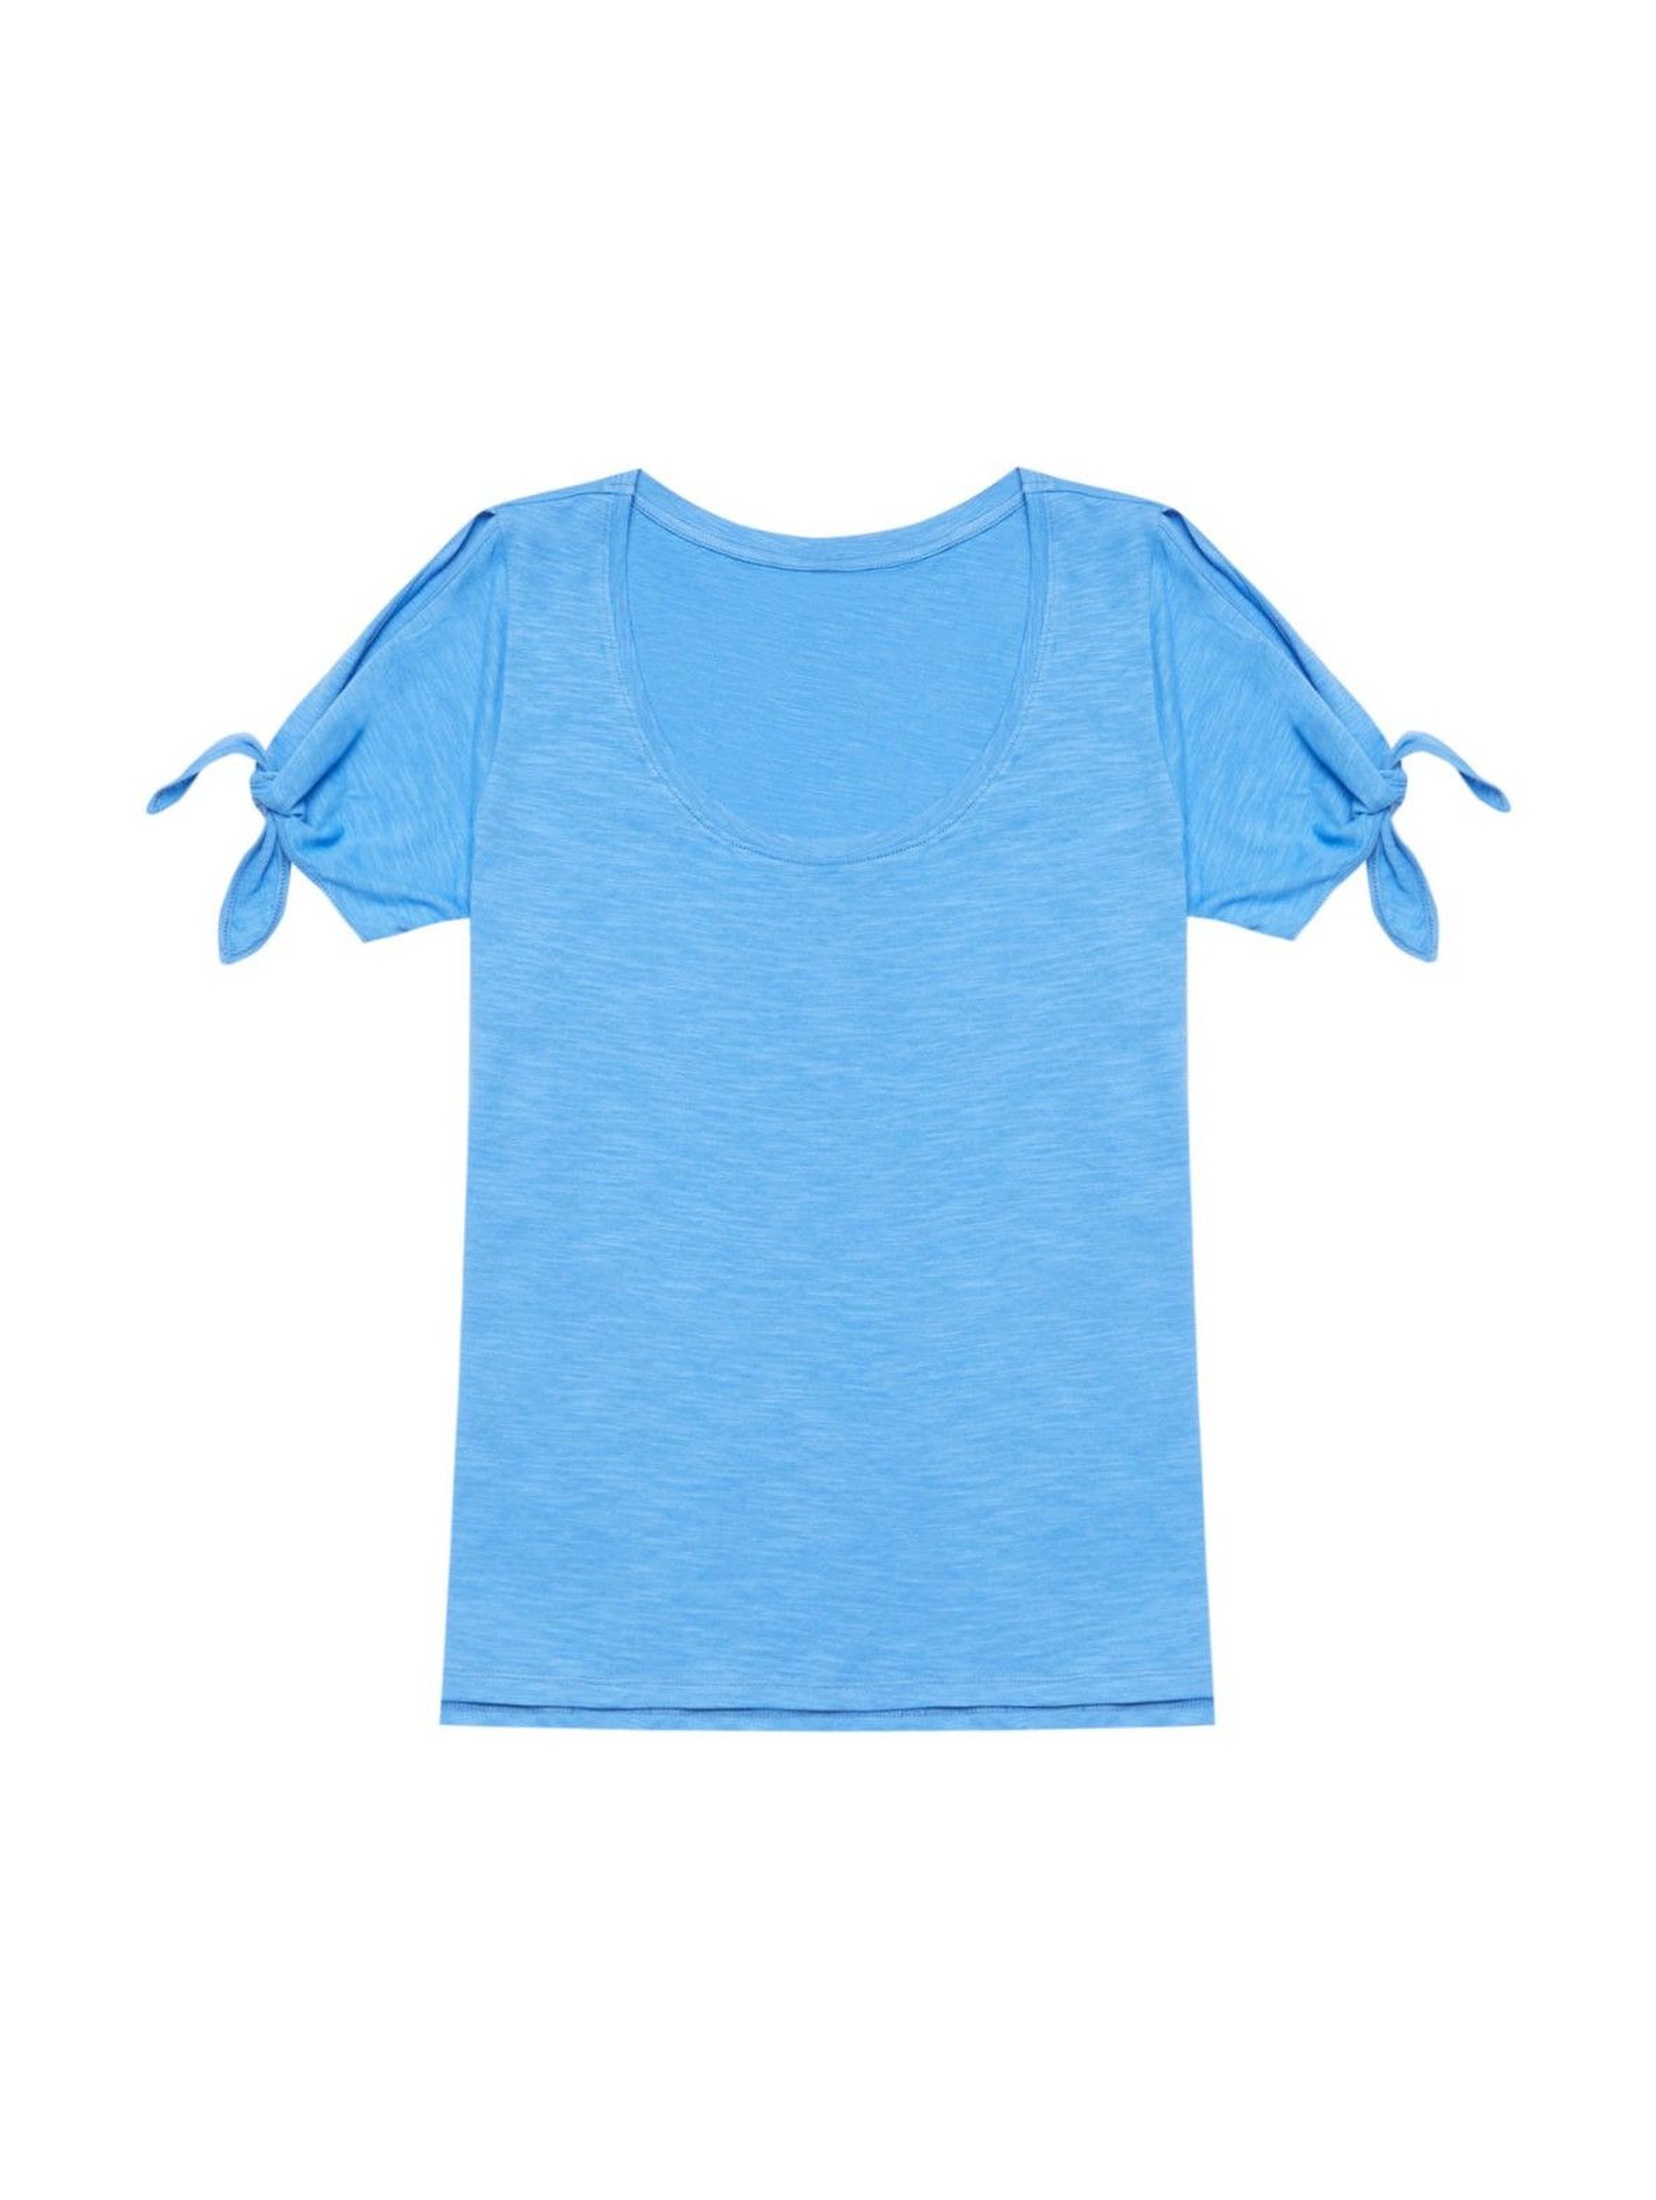 T-shirt damski z wiązaniem przy rękawach- niebieski